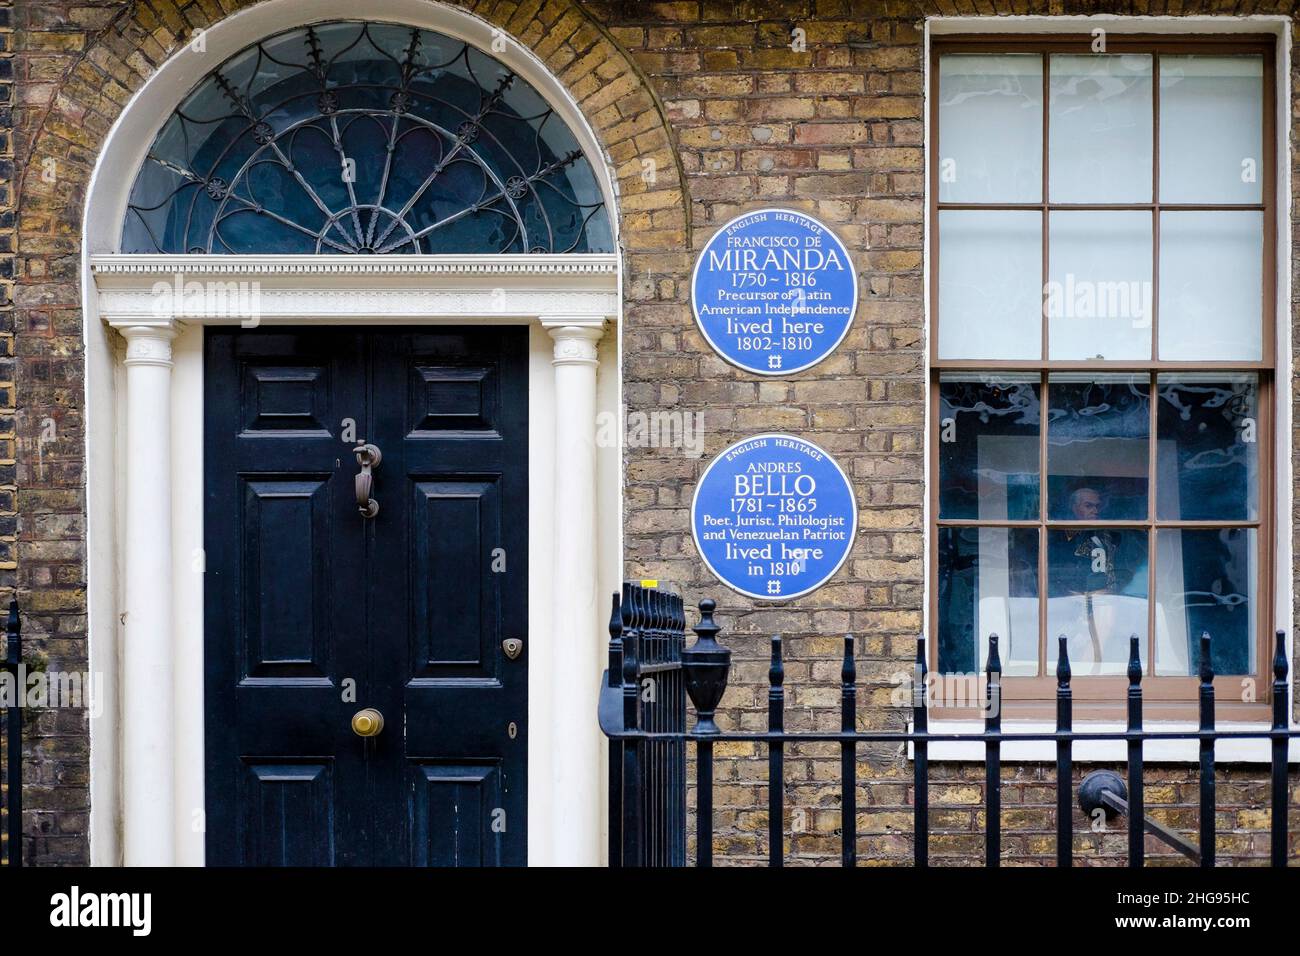 Placas azules del Patrimonio Inglés en 58 Grafton Way, Londres, en conmemoración de Francisco De Miranda y Andrés Bello que ambos vivieron en la casa en el 1800s. Foto de stock